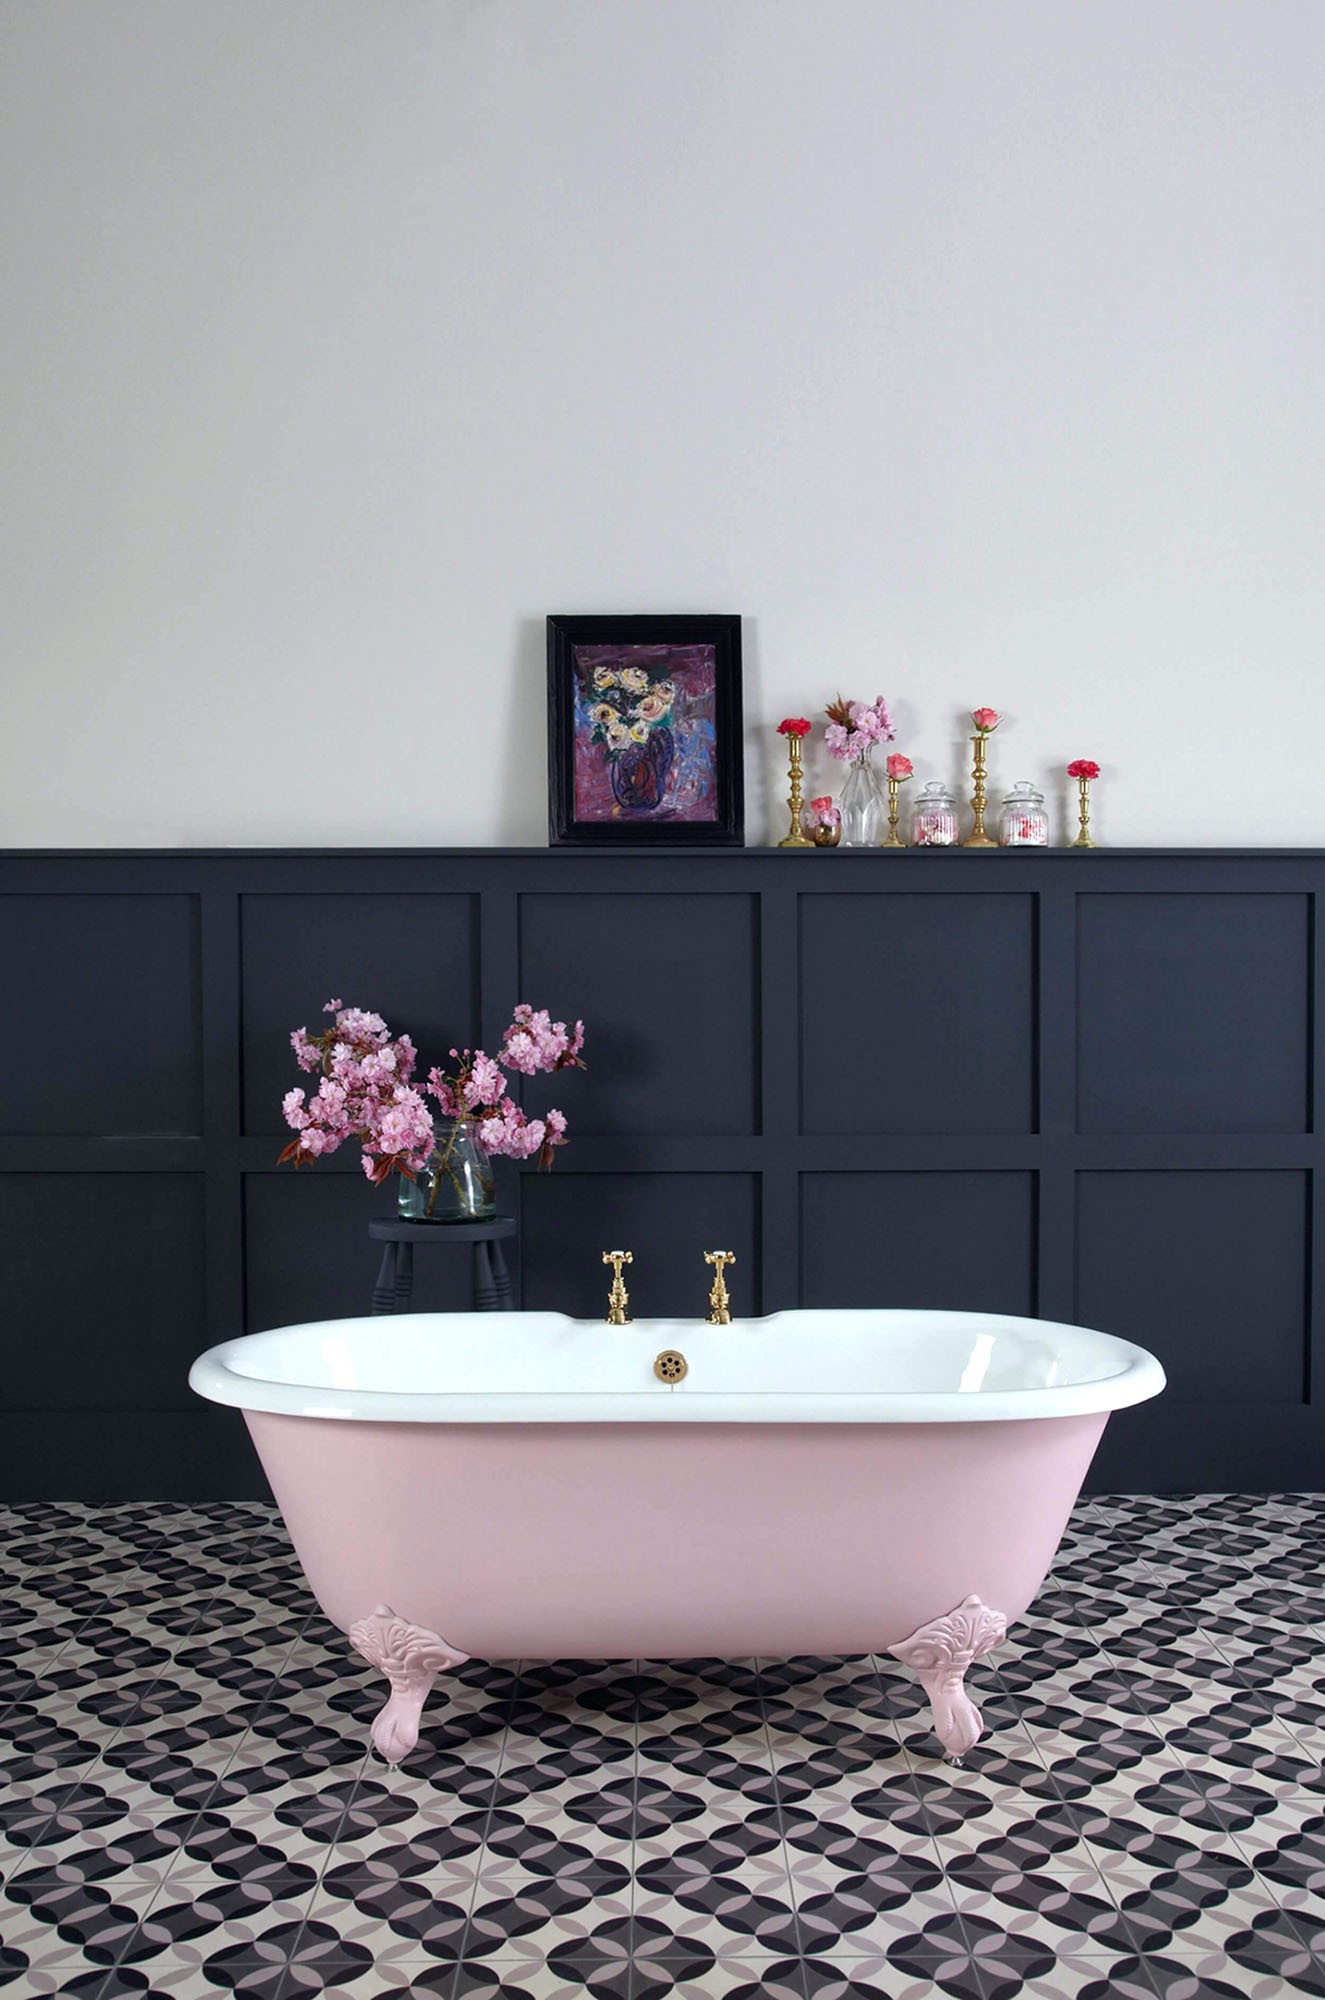 Décor do dia: sala de banho com banheira retrô rosa (Foto: Divulgação)